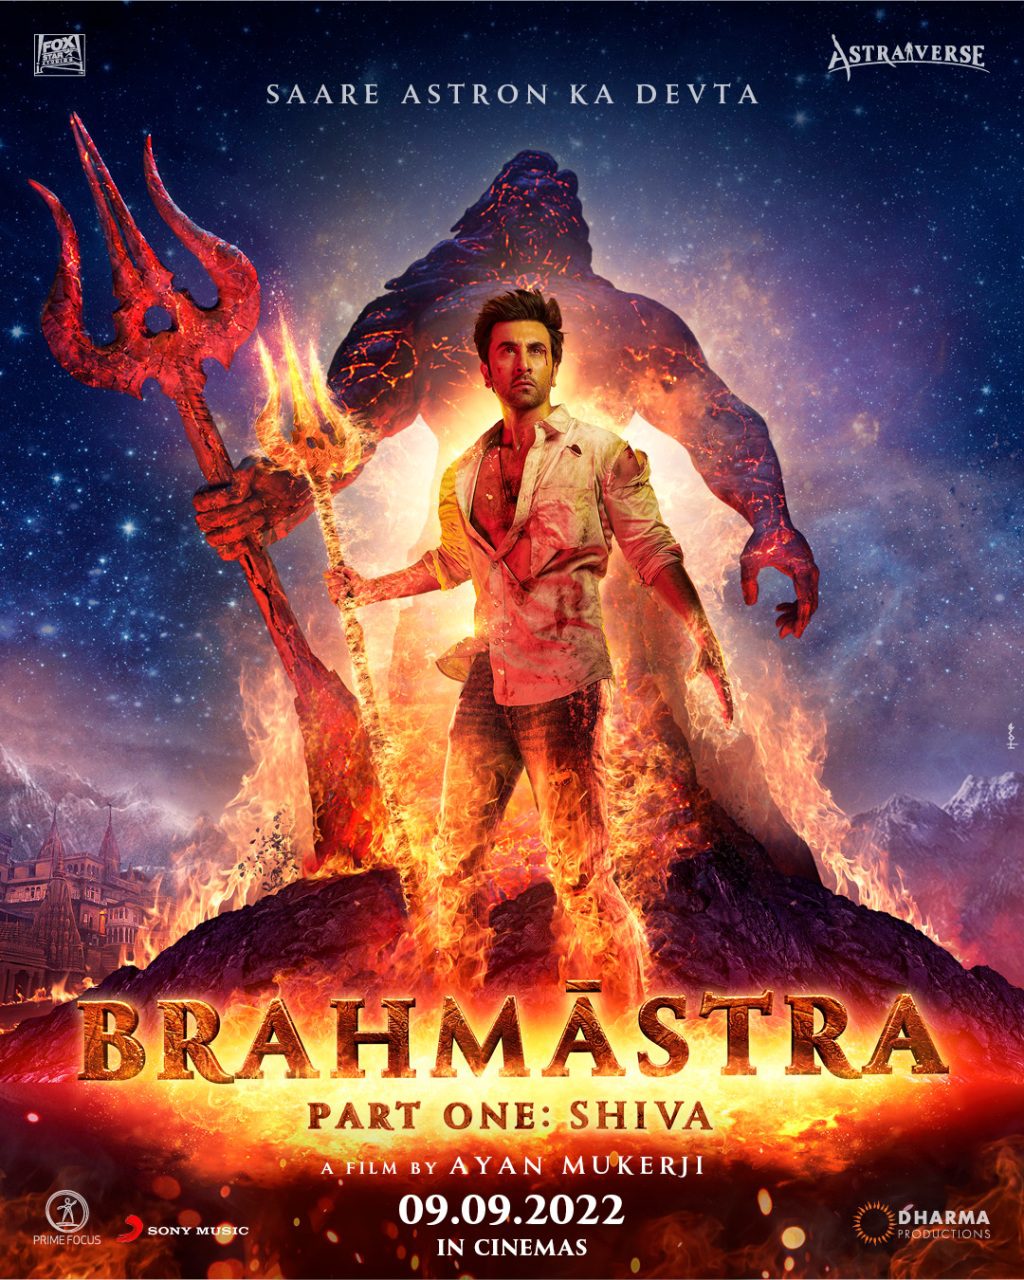 Brahmastra prima parte: Shiva